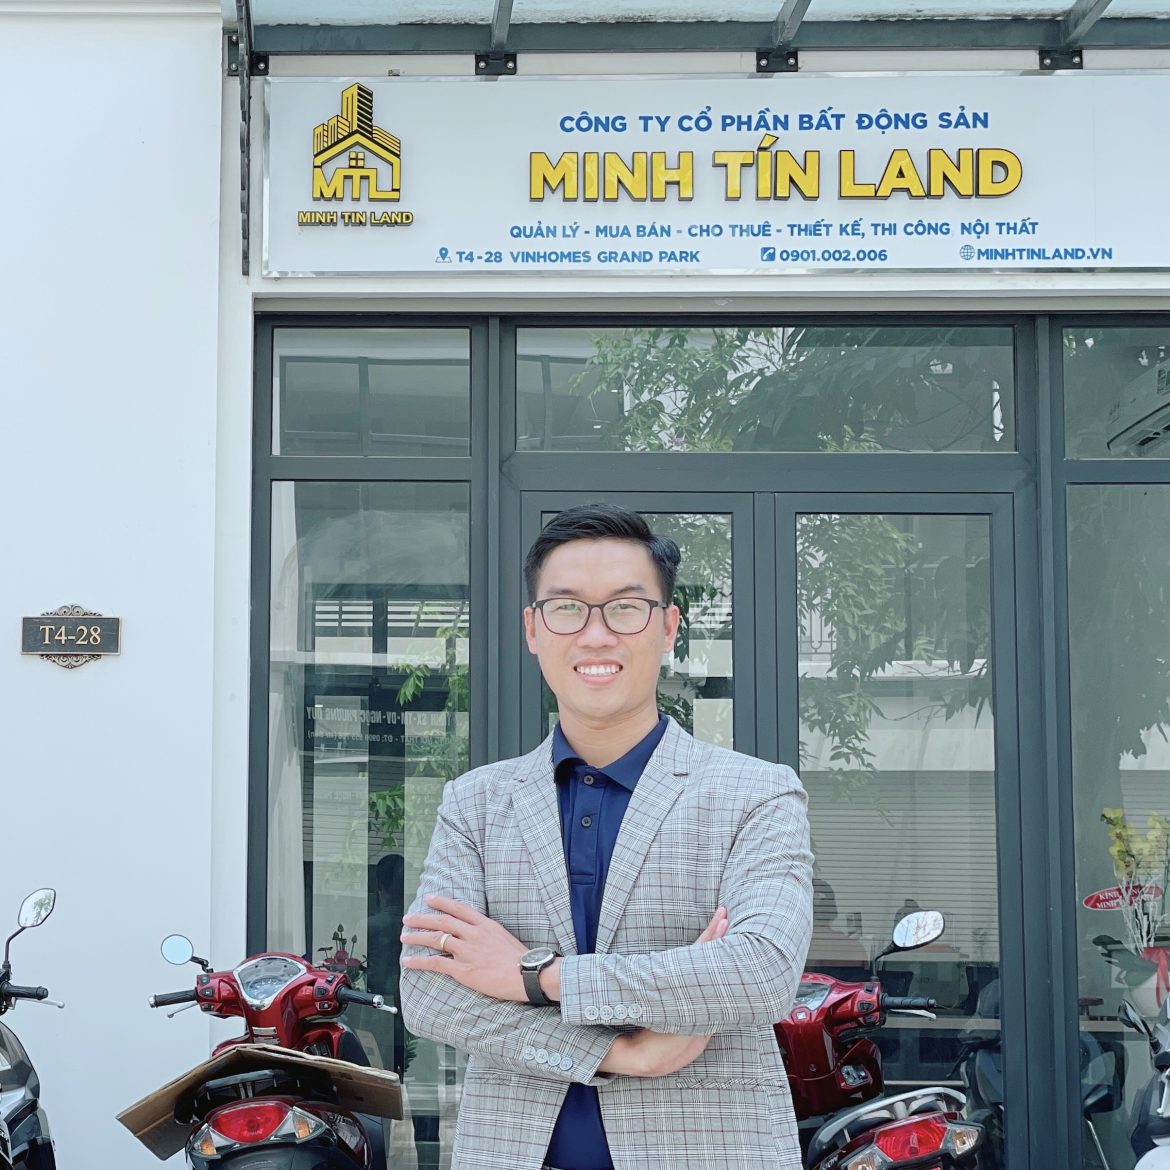 Chia Sẻ Của Chuyên Gia Đỗ Hoàng Sinh CEO Công Ty Cổ Phần BĐS Minh Tín Land